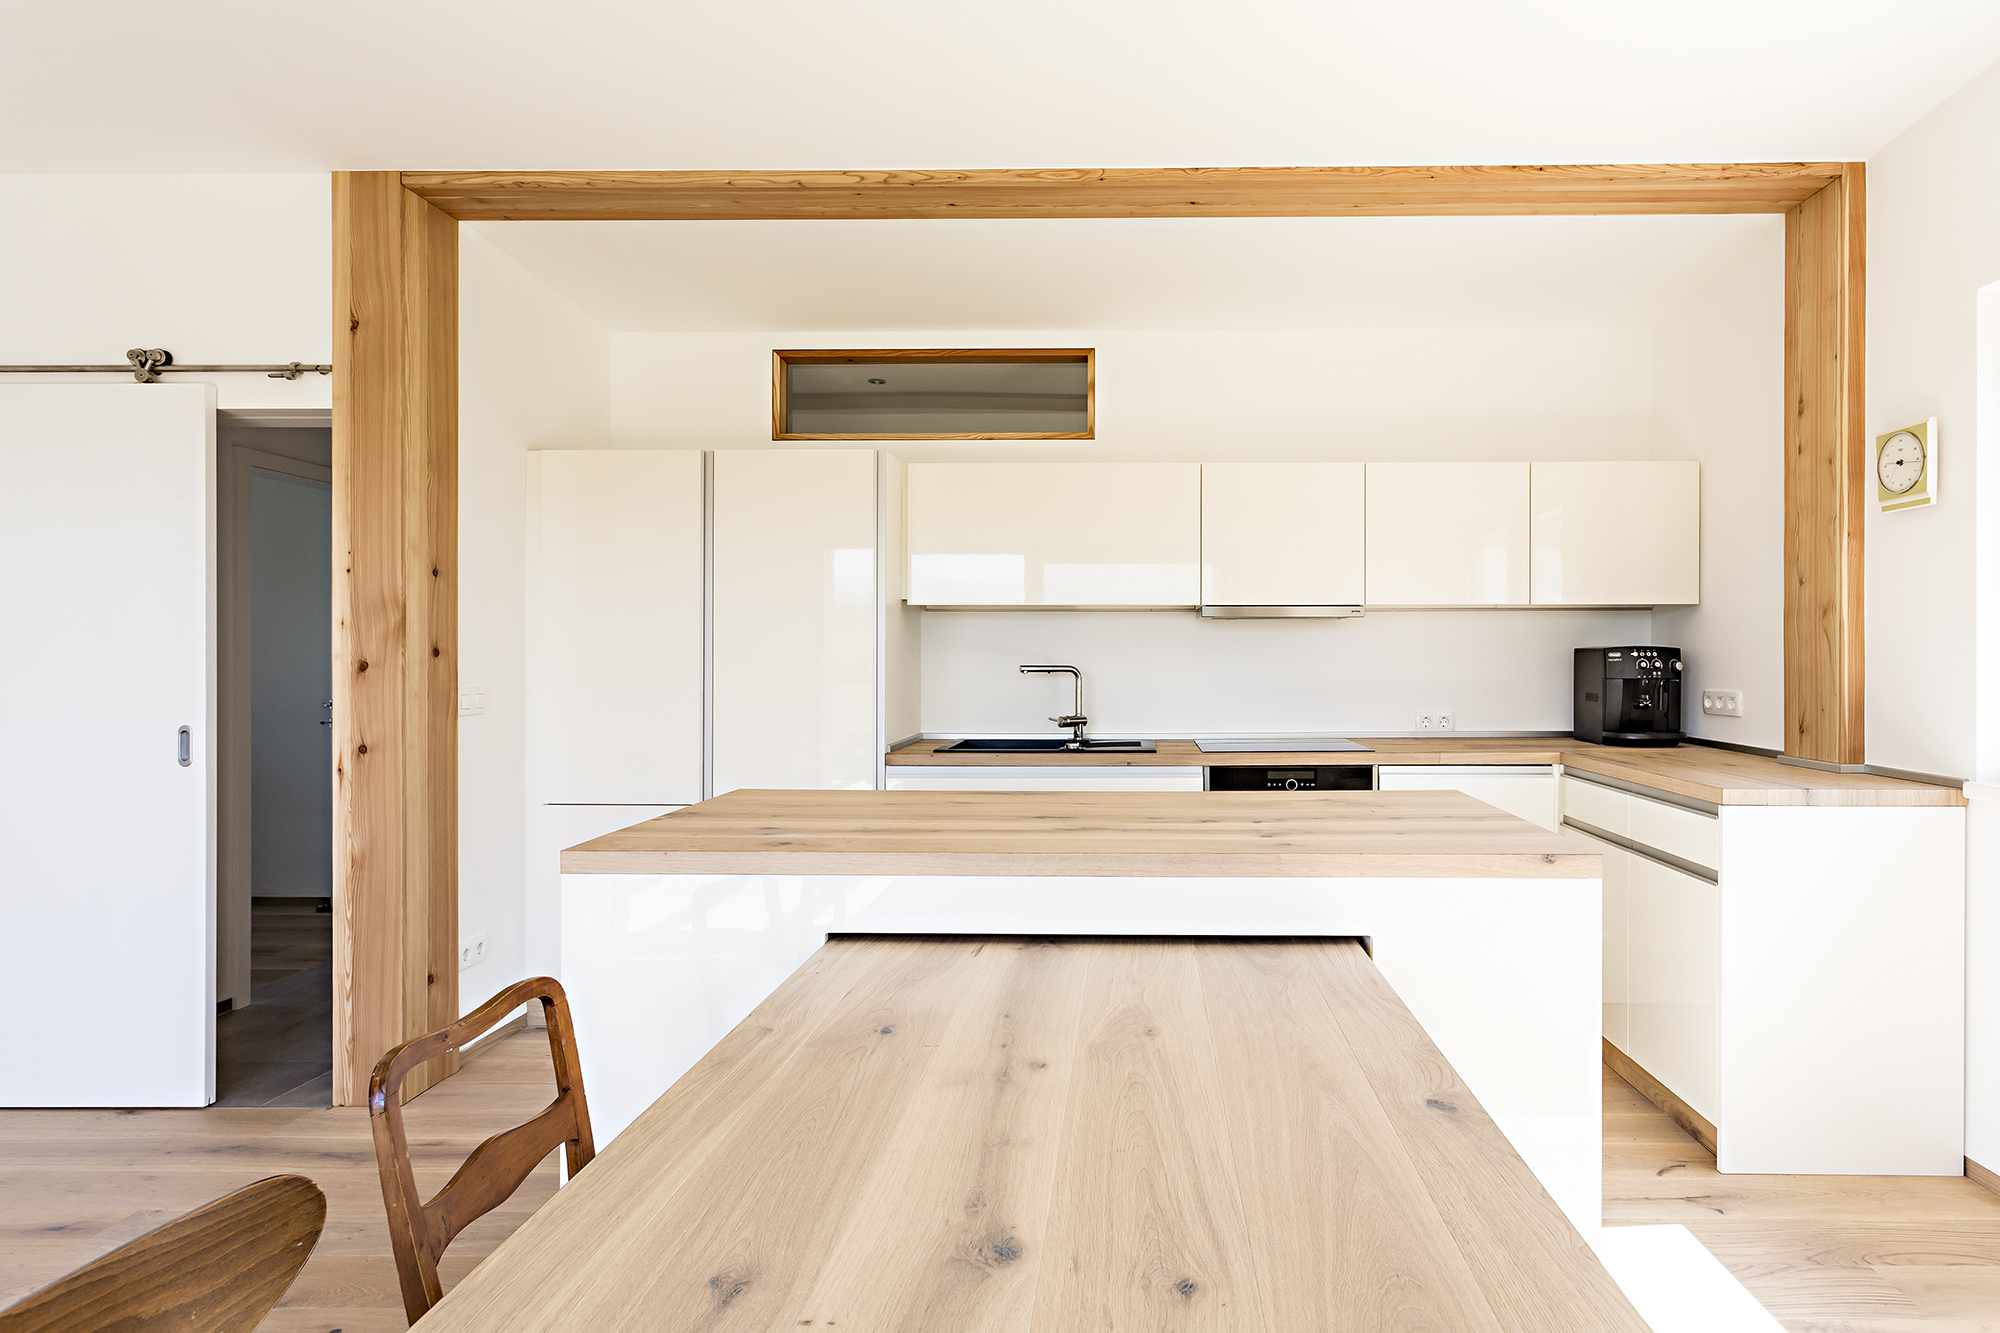 Furniture / Kitchen / Interior / Design